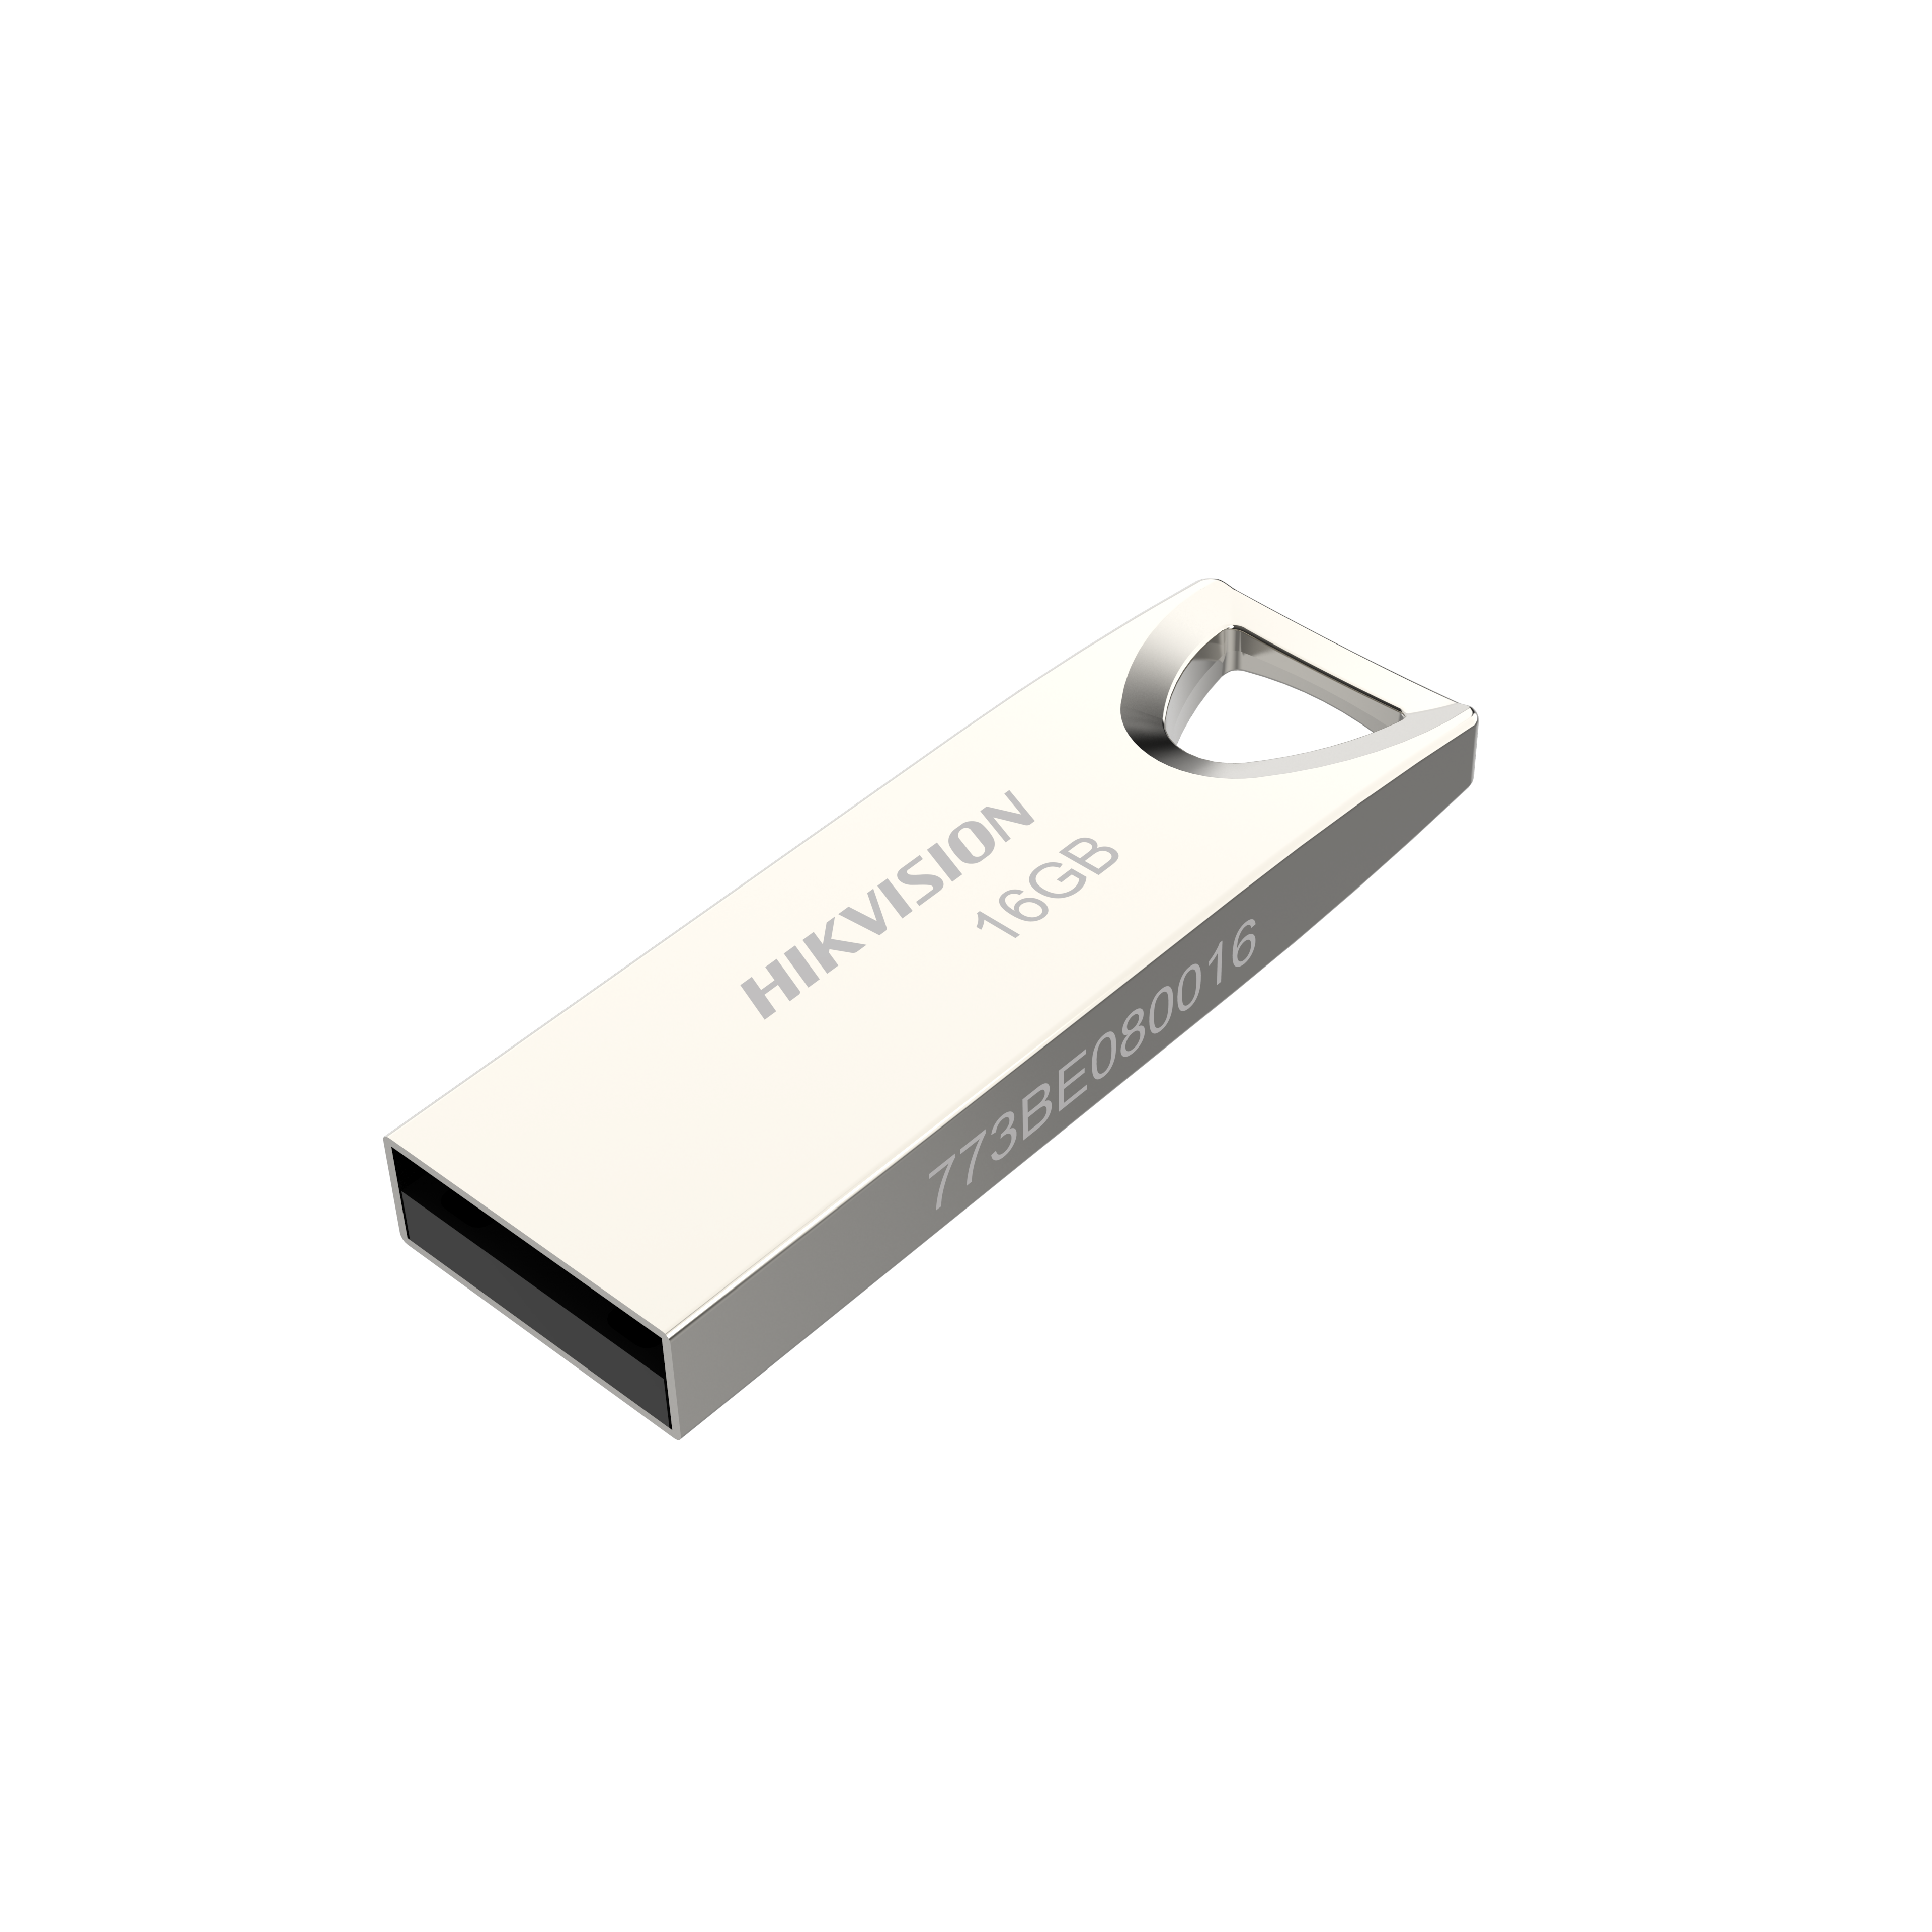 HikVision HS-USB-M200 USB Flash Drive Metal Case